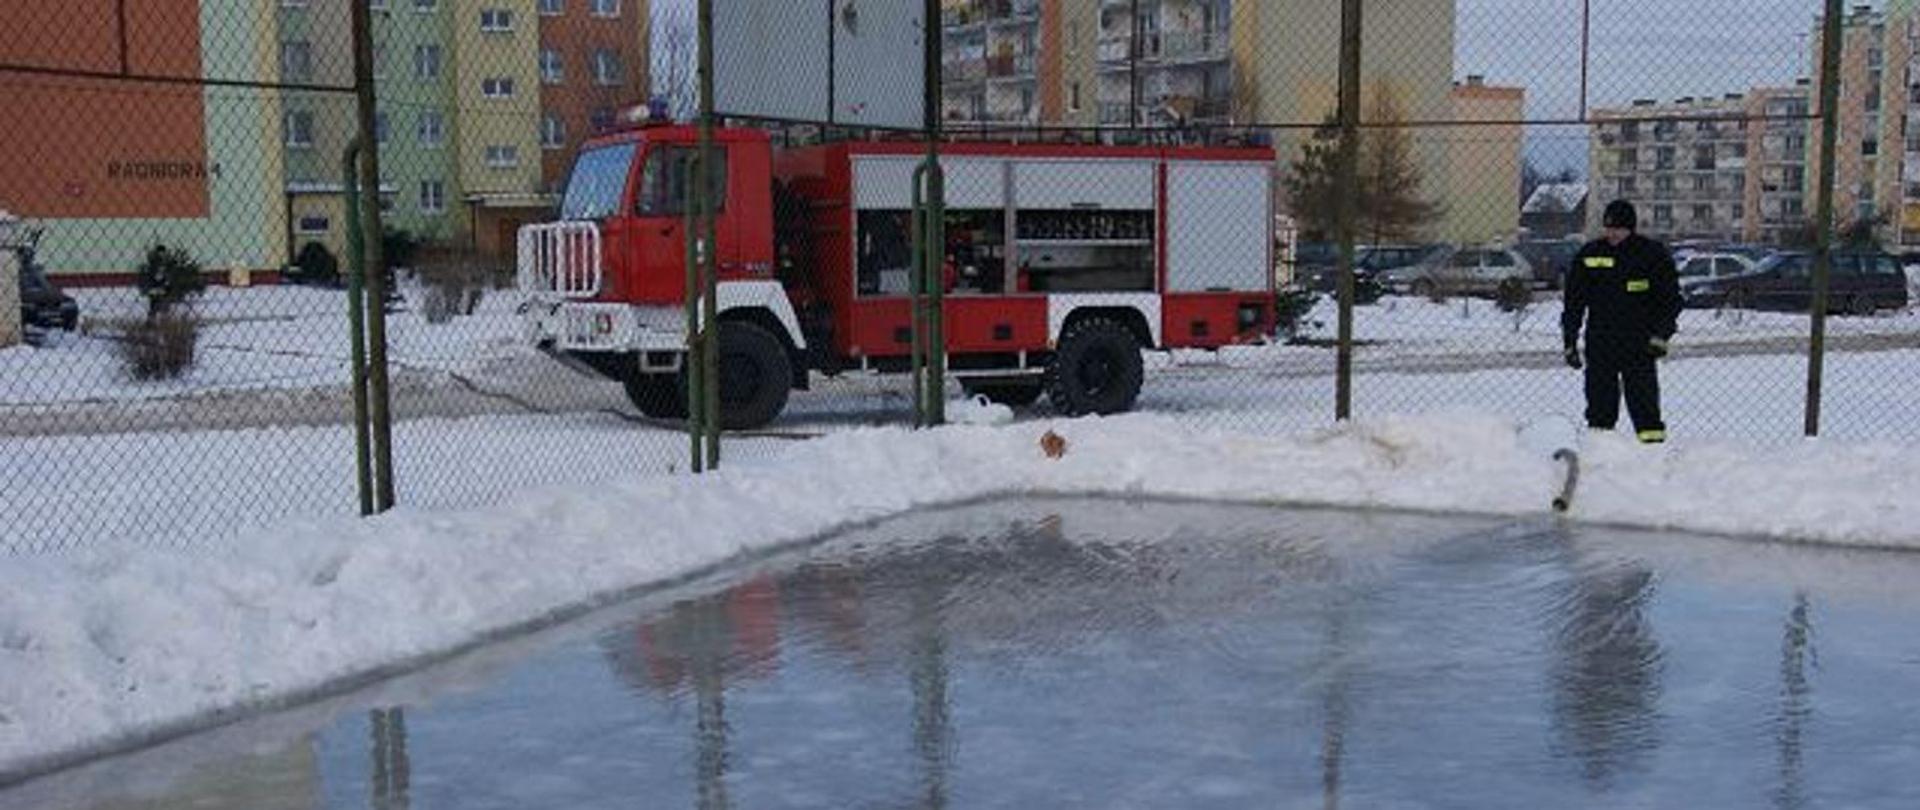 Wóz strażacki oraz strażak wylewający wodę na lodowisko publiczne, w koło oznaki zimy